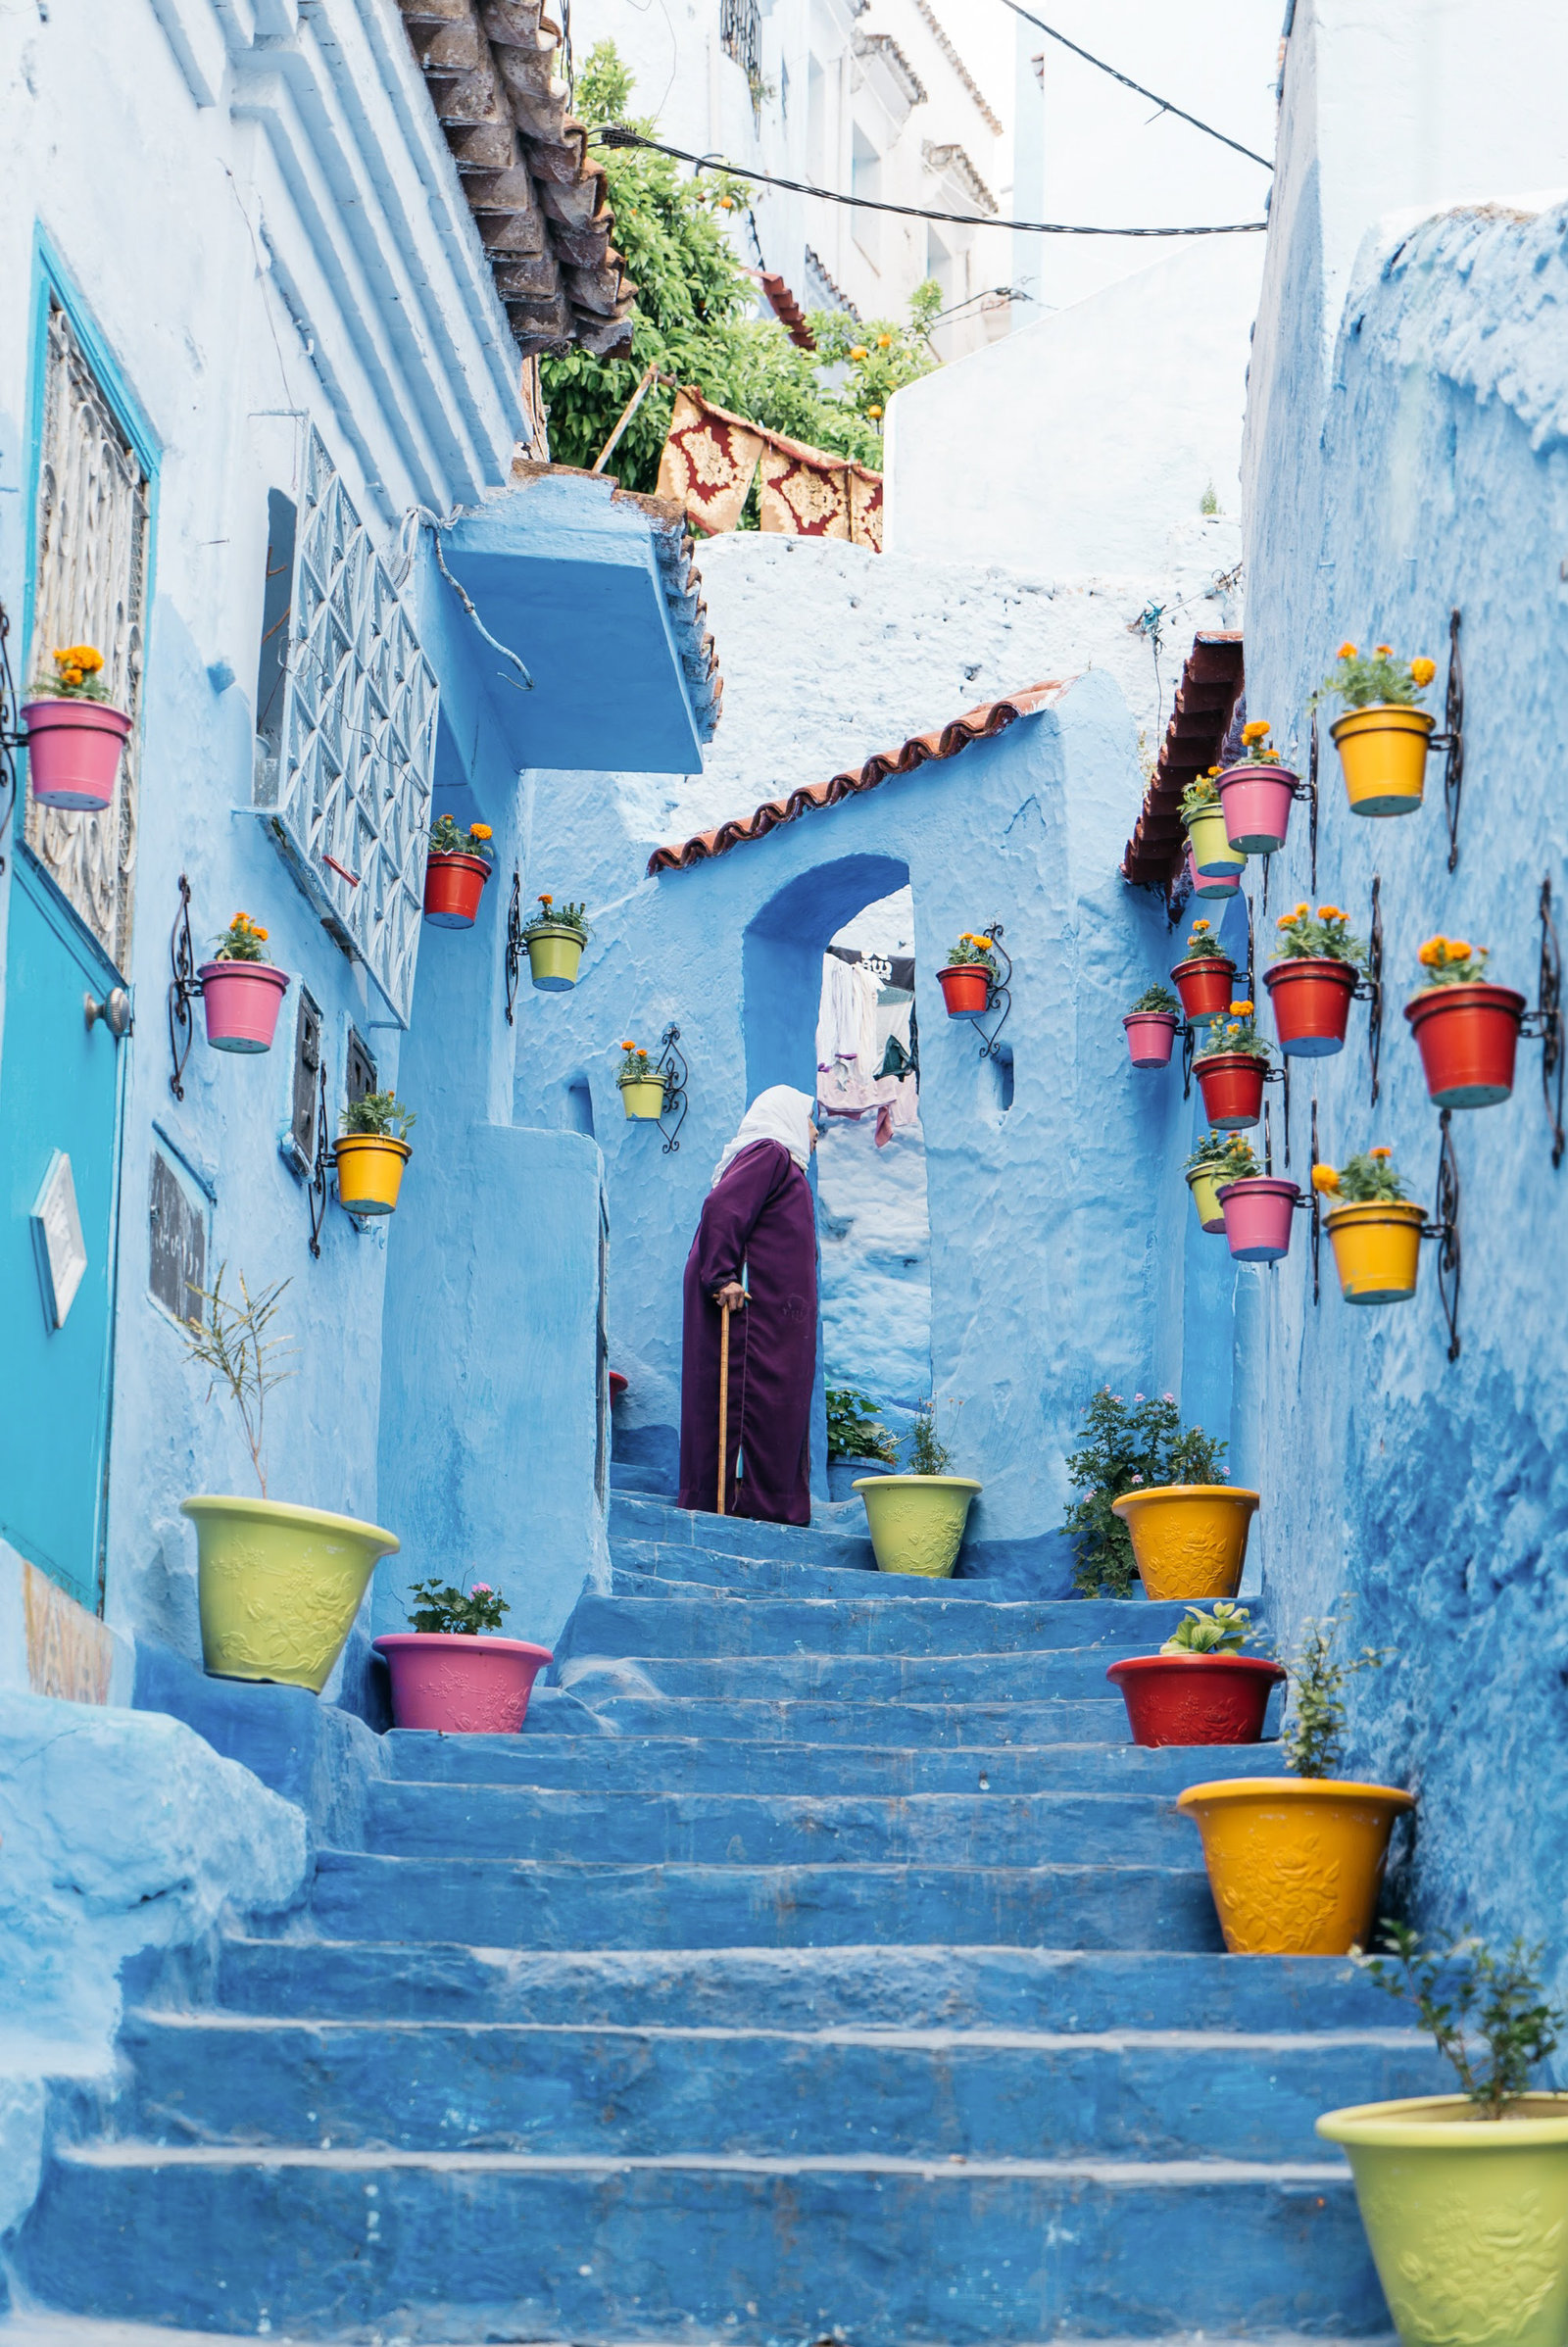 Sasha_Reiko_Photography_Travel_Morocco-102